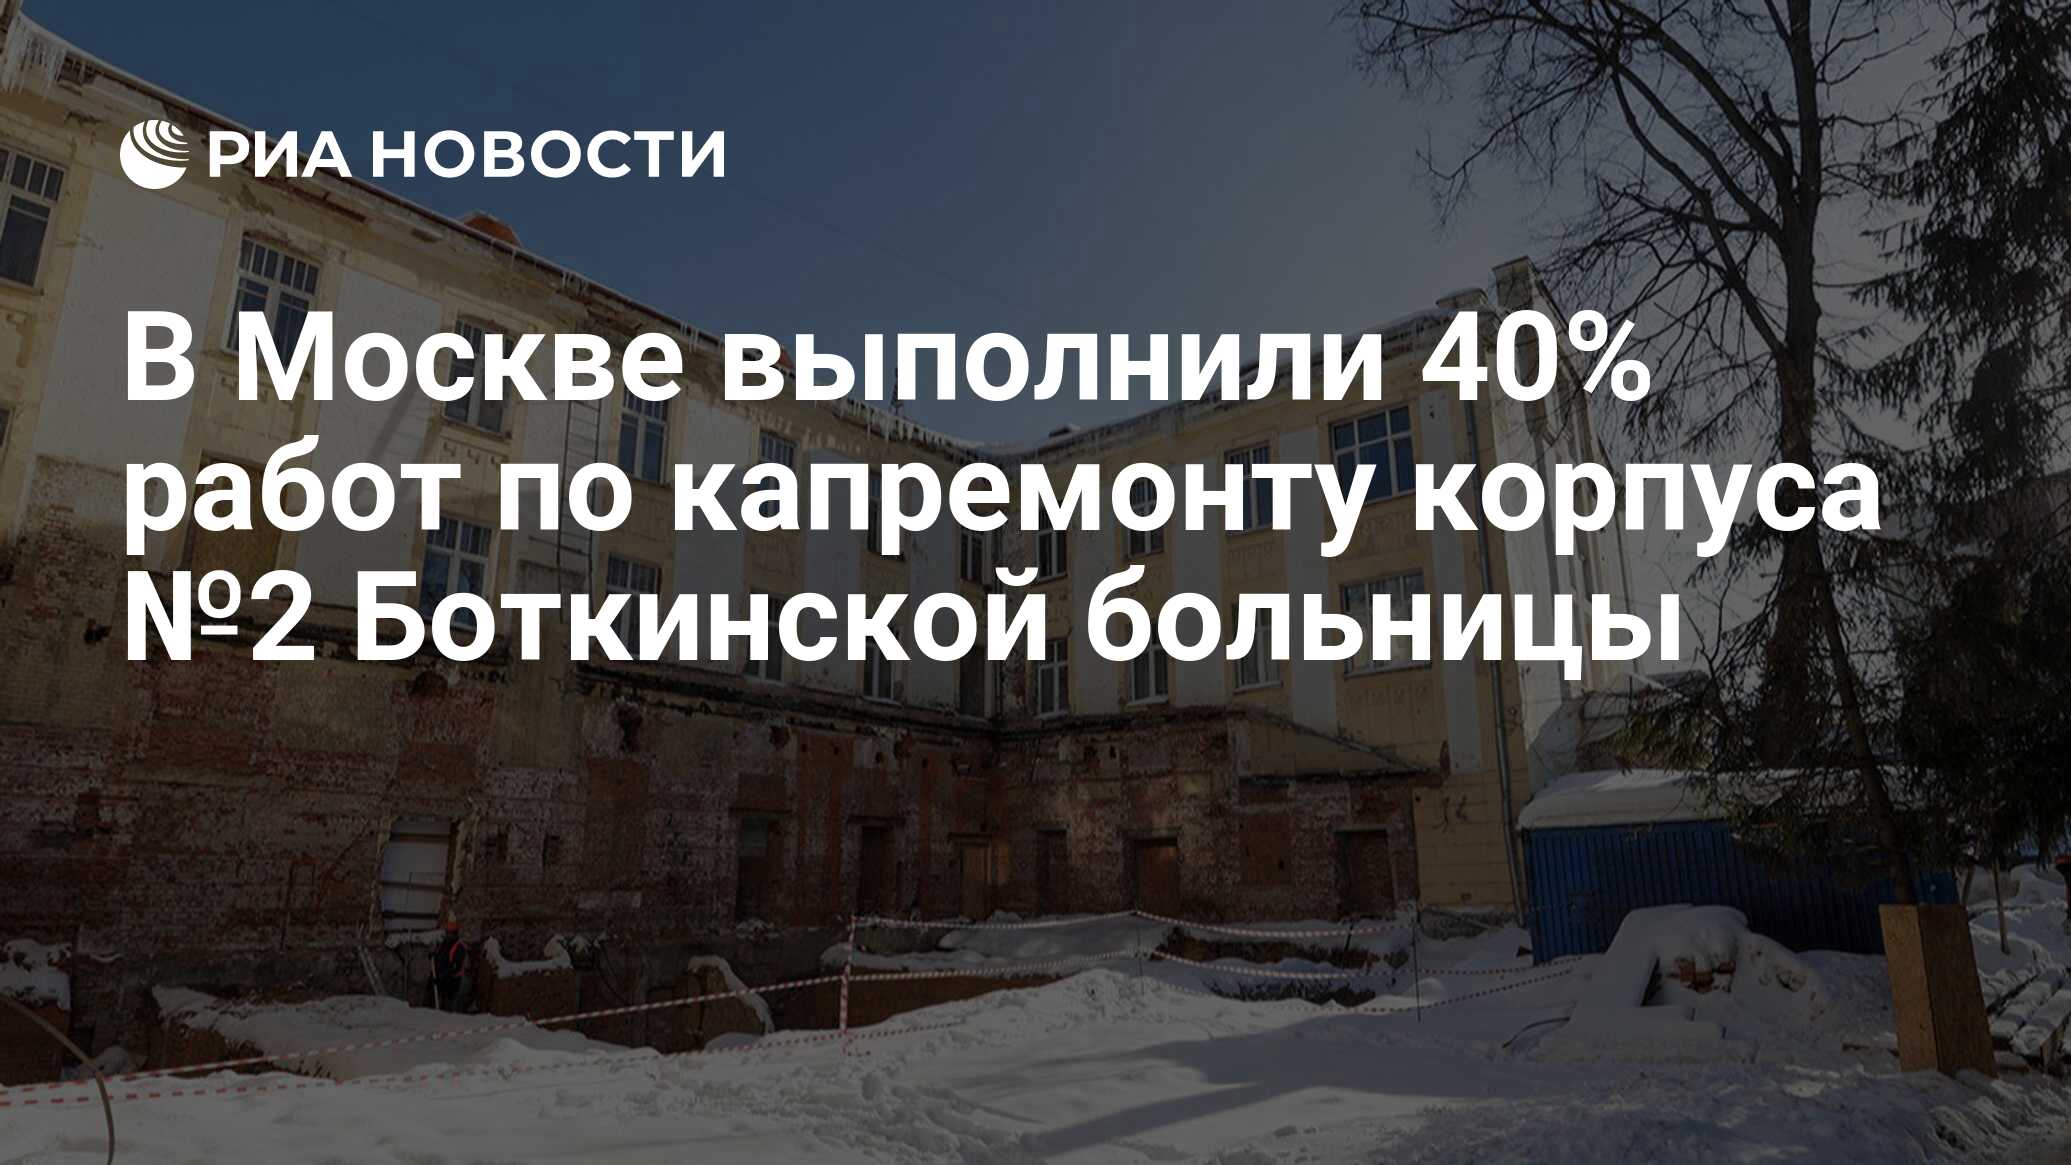 Согласована реставрация исторического корпуса Боткинской больницы